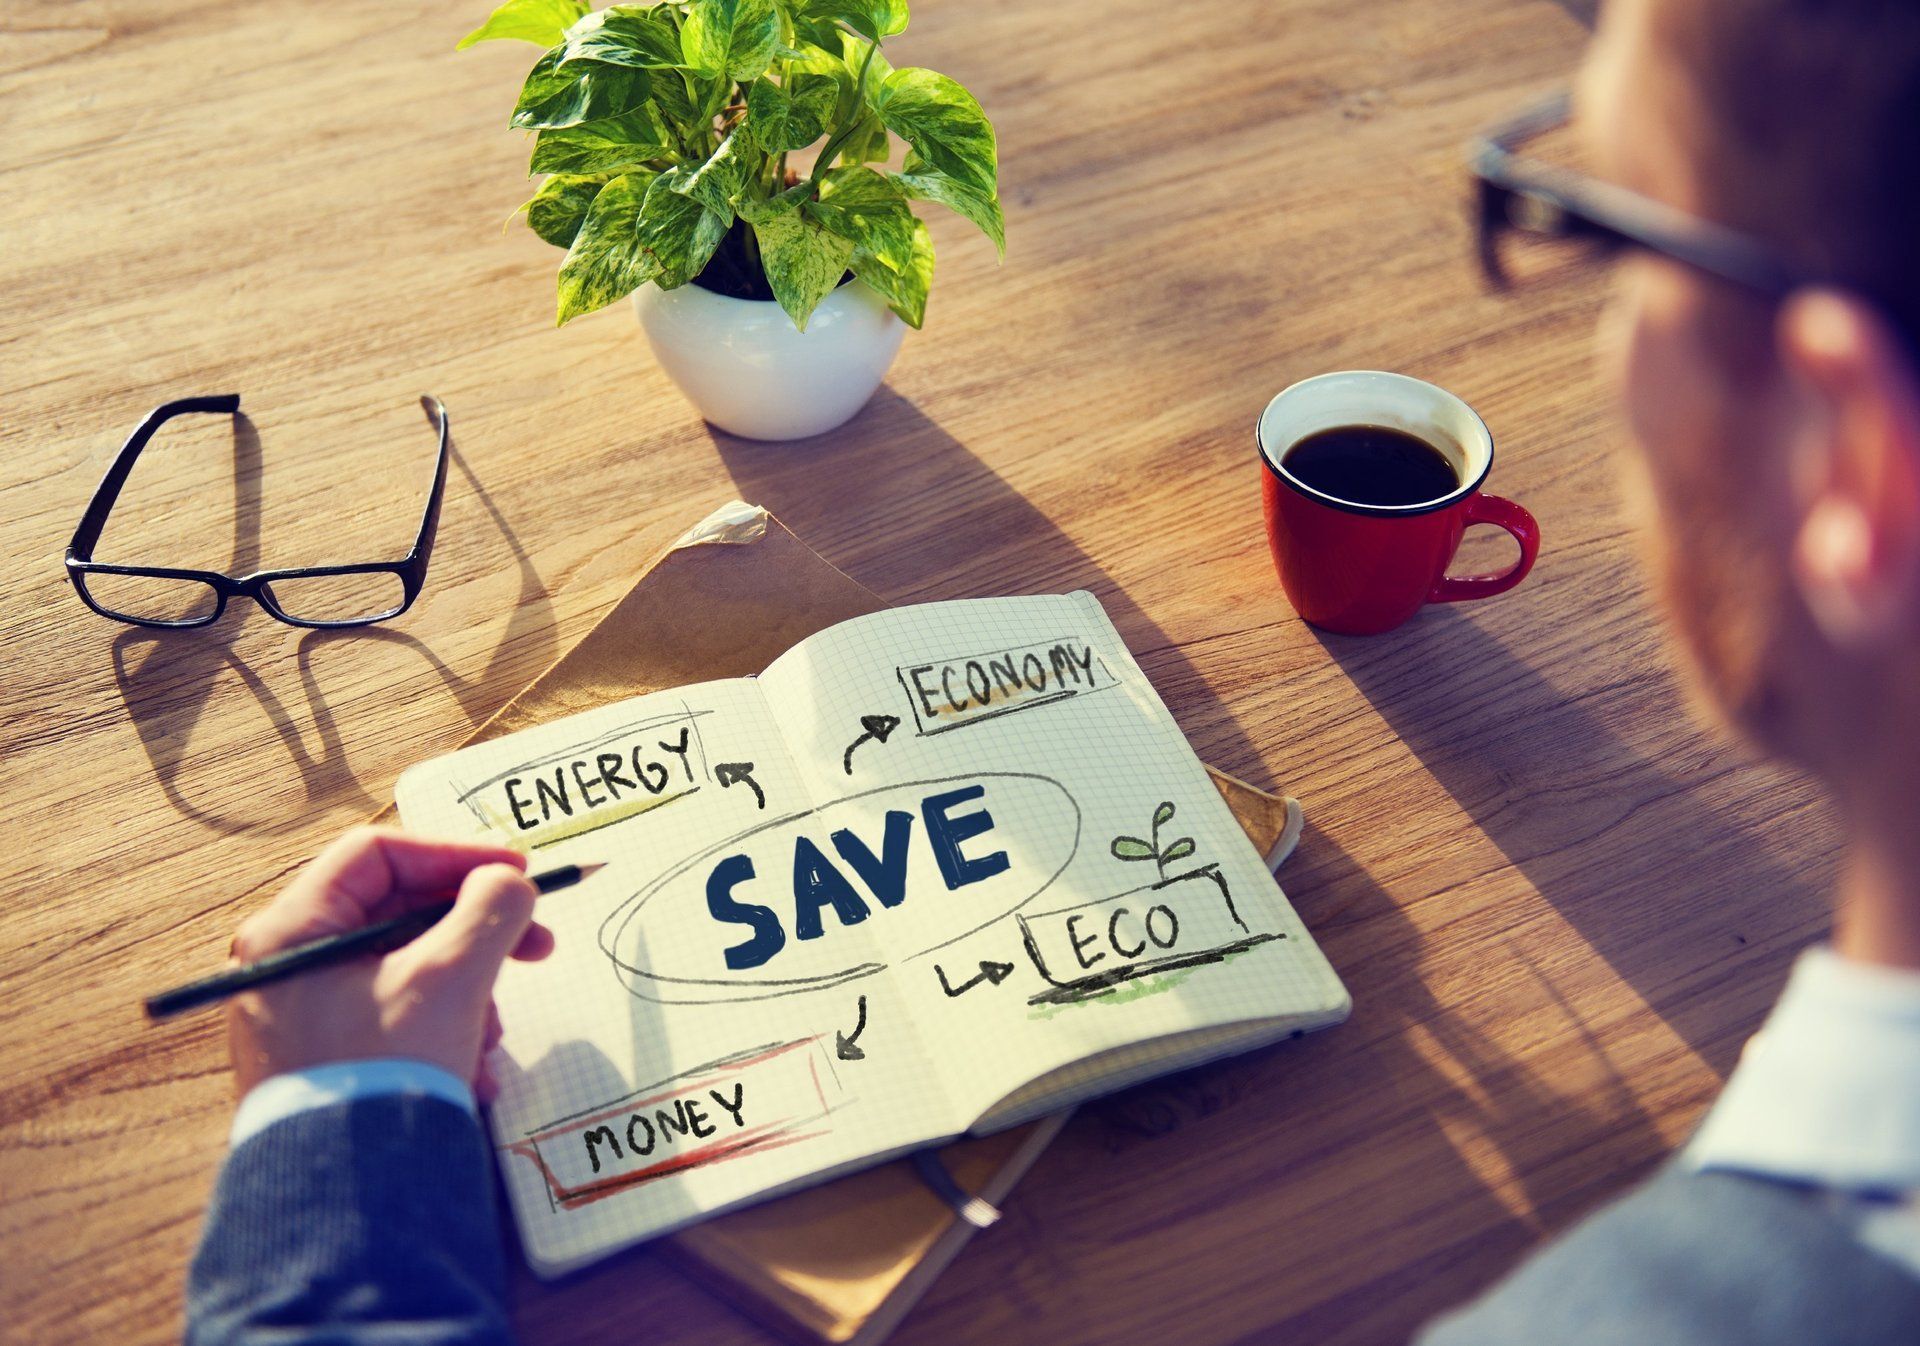 Savings ways to save money